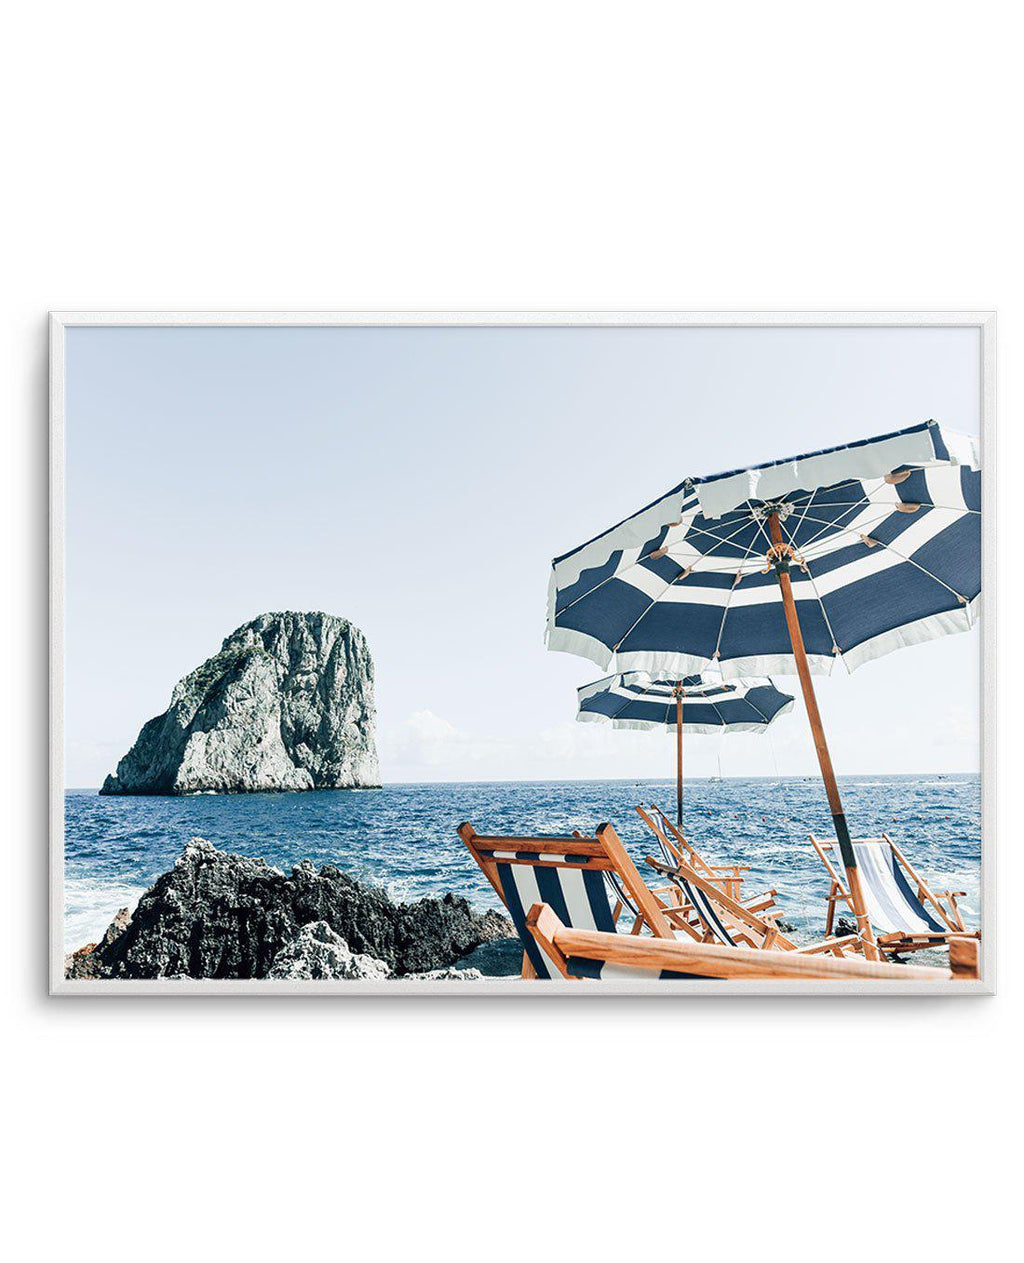 Isle of Capri – Olive et Oriel